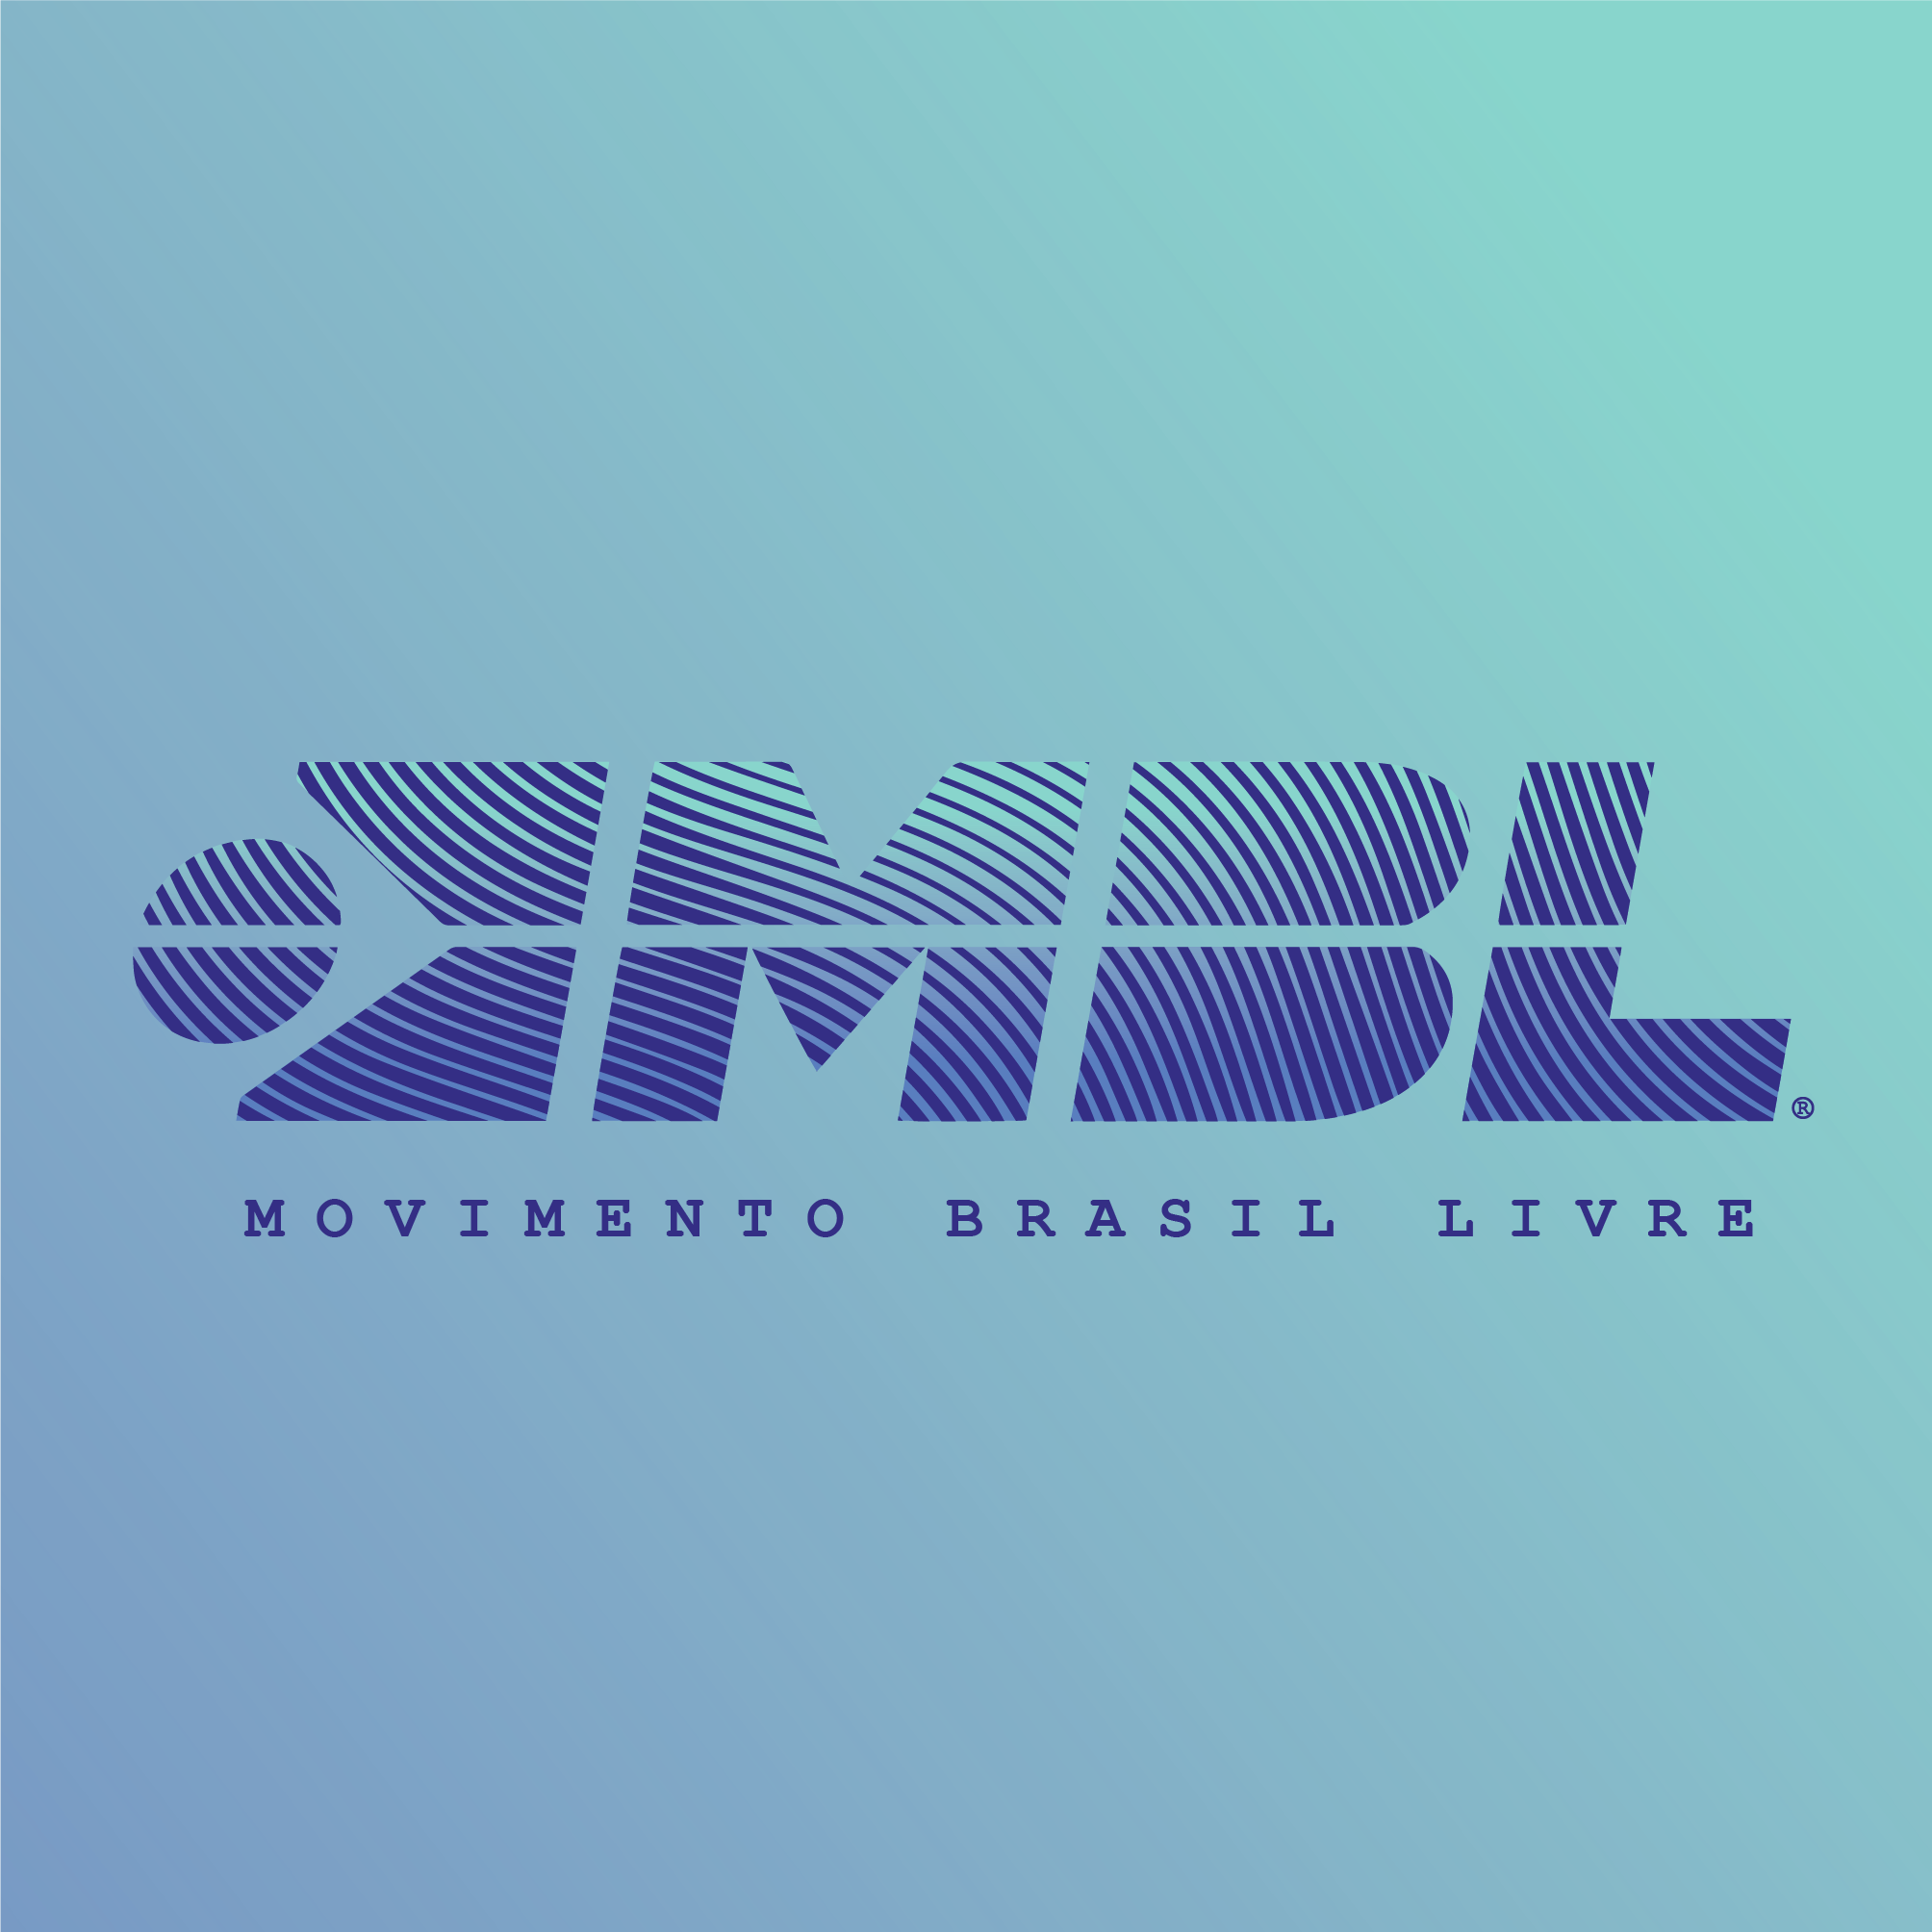 Free Brazil Movement, Libertarianism Wiki